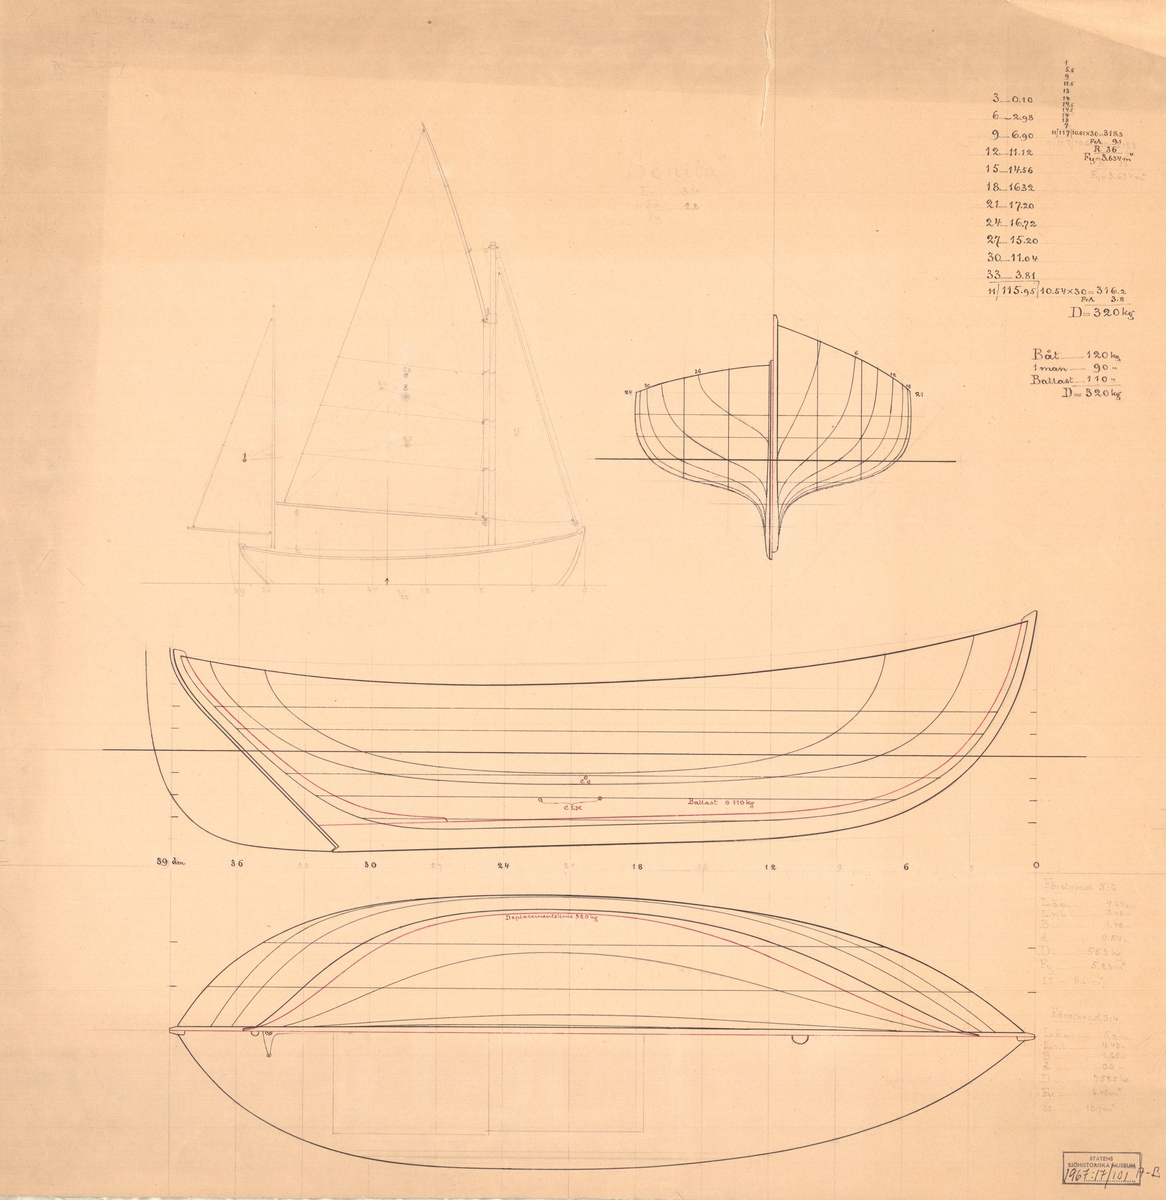 Tvåmastad segelbåt
Spantruta, rigg,- profil och linjeritning